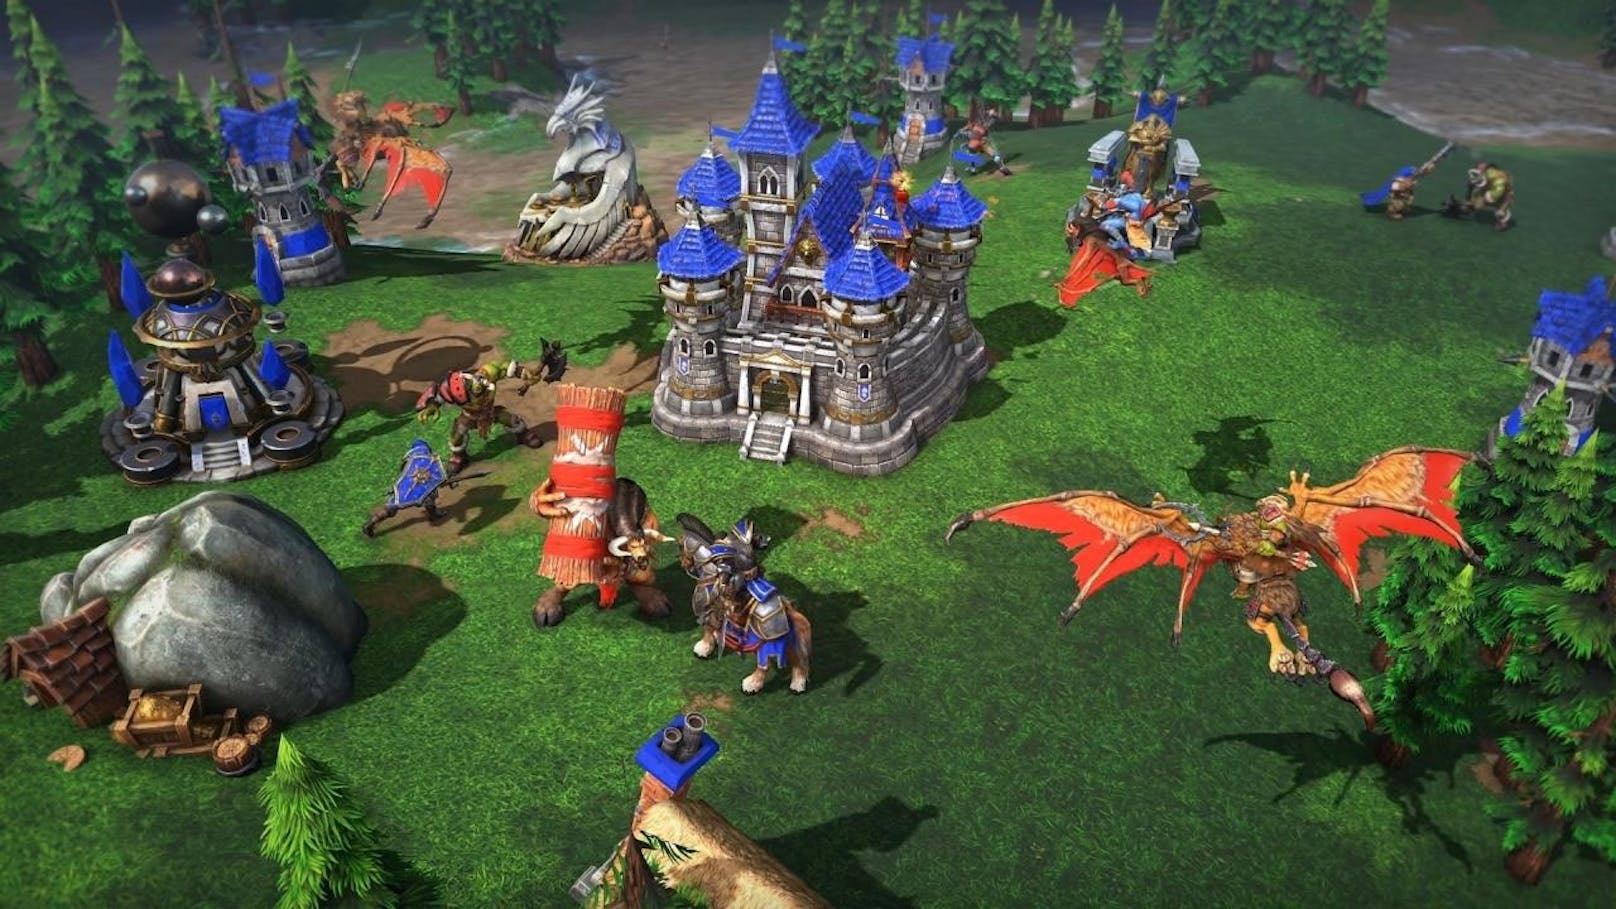 Laut Blizzard wurde das Game "von Grund auf neu entwickelt", einschließlich eines umfassenden Grafikupdates, einer Reihe moderner sozialer Funktionen samt Spielerzuweisung über Blizzard Battle.net.